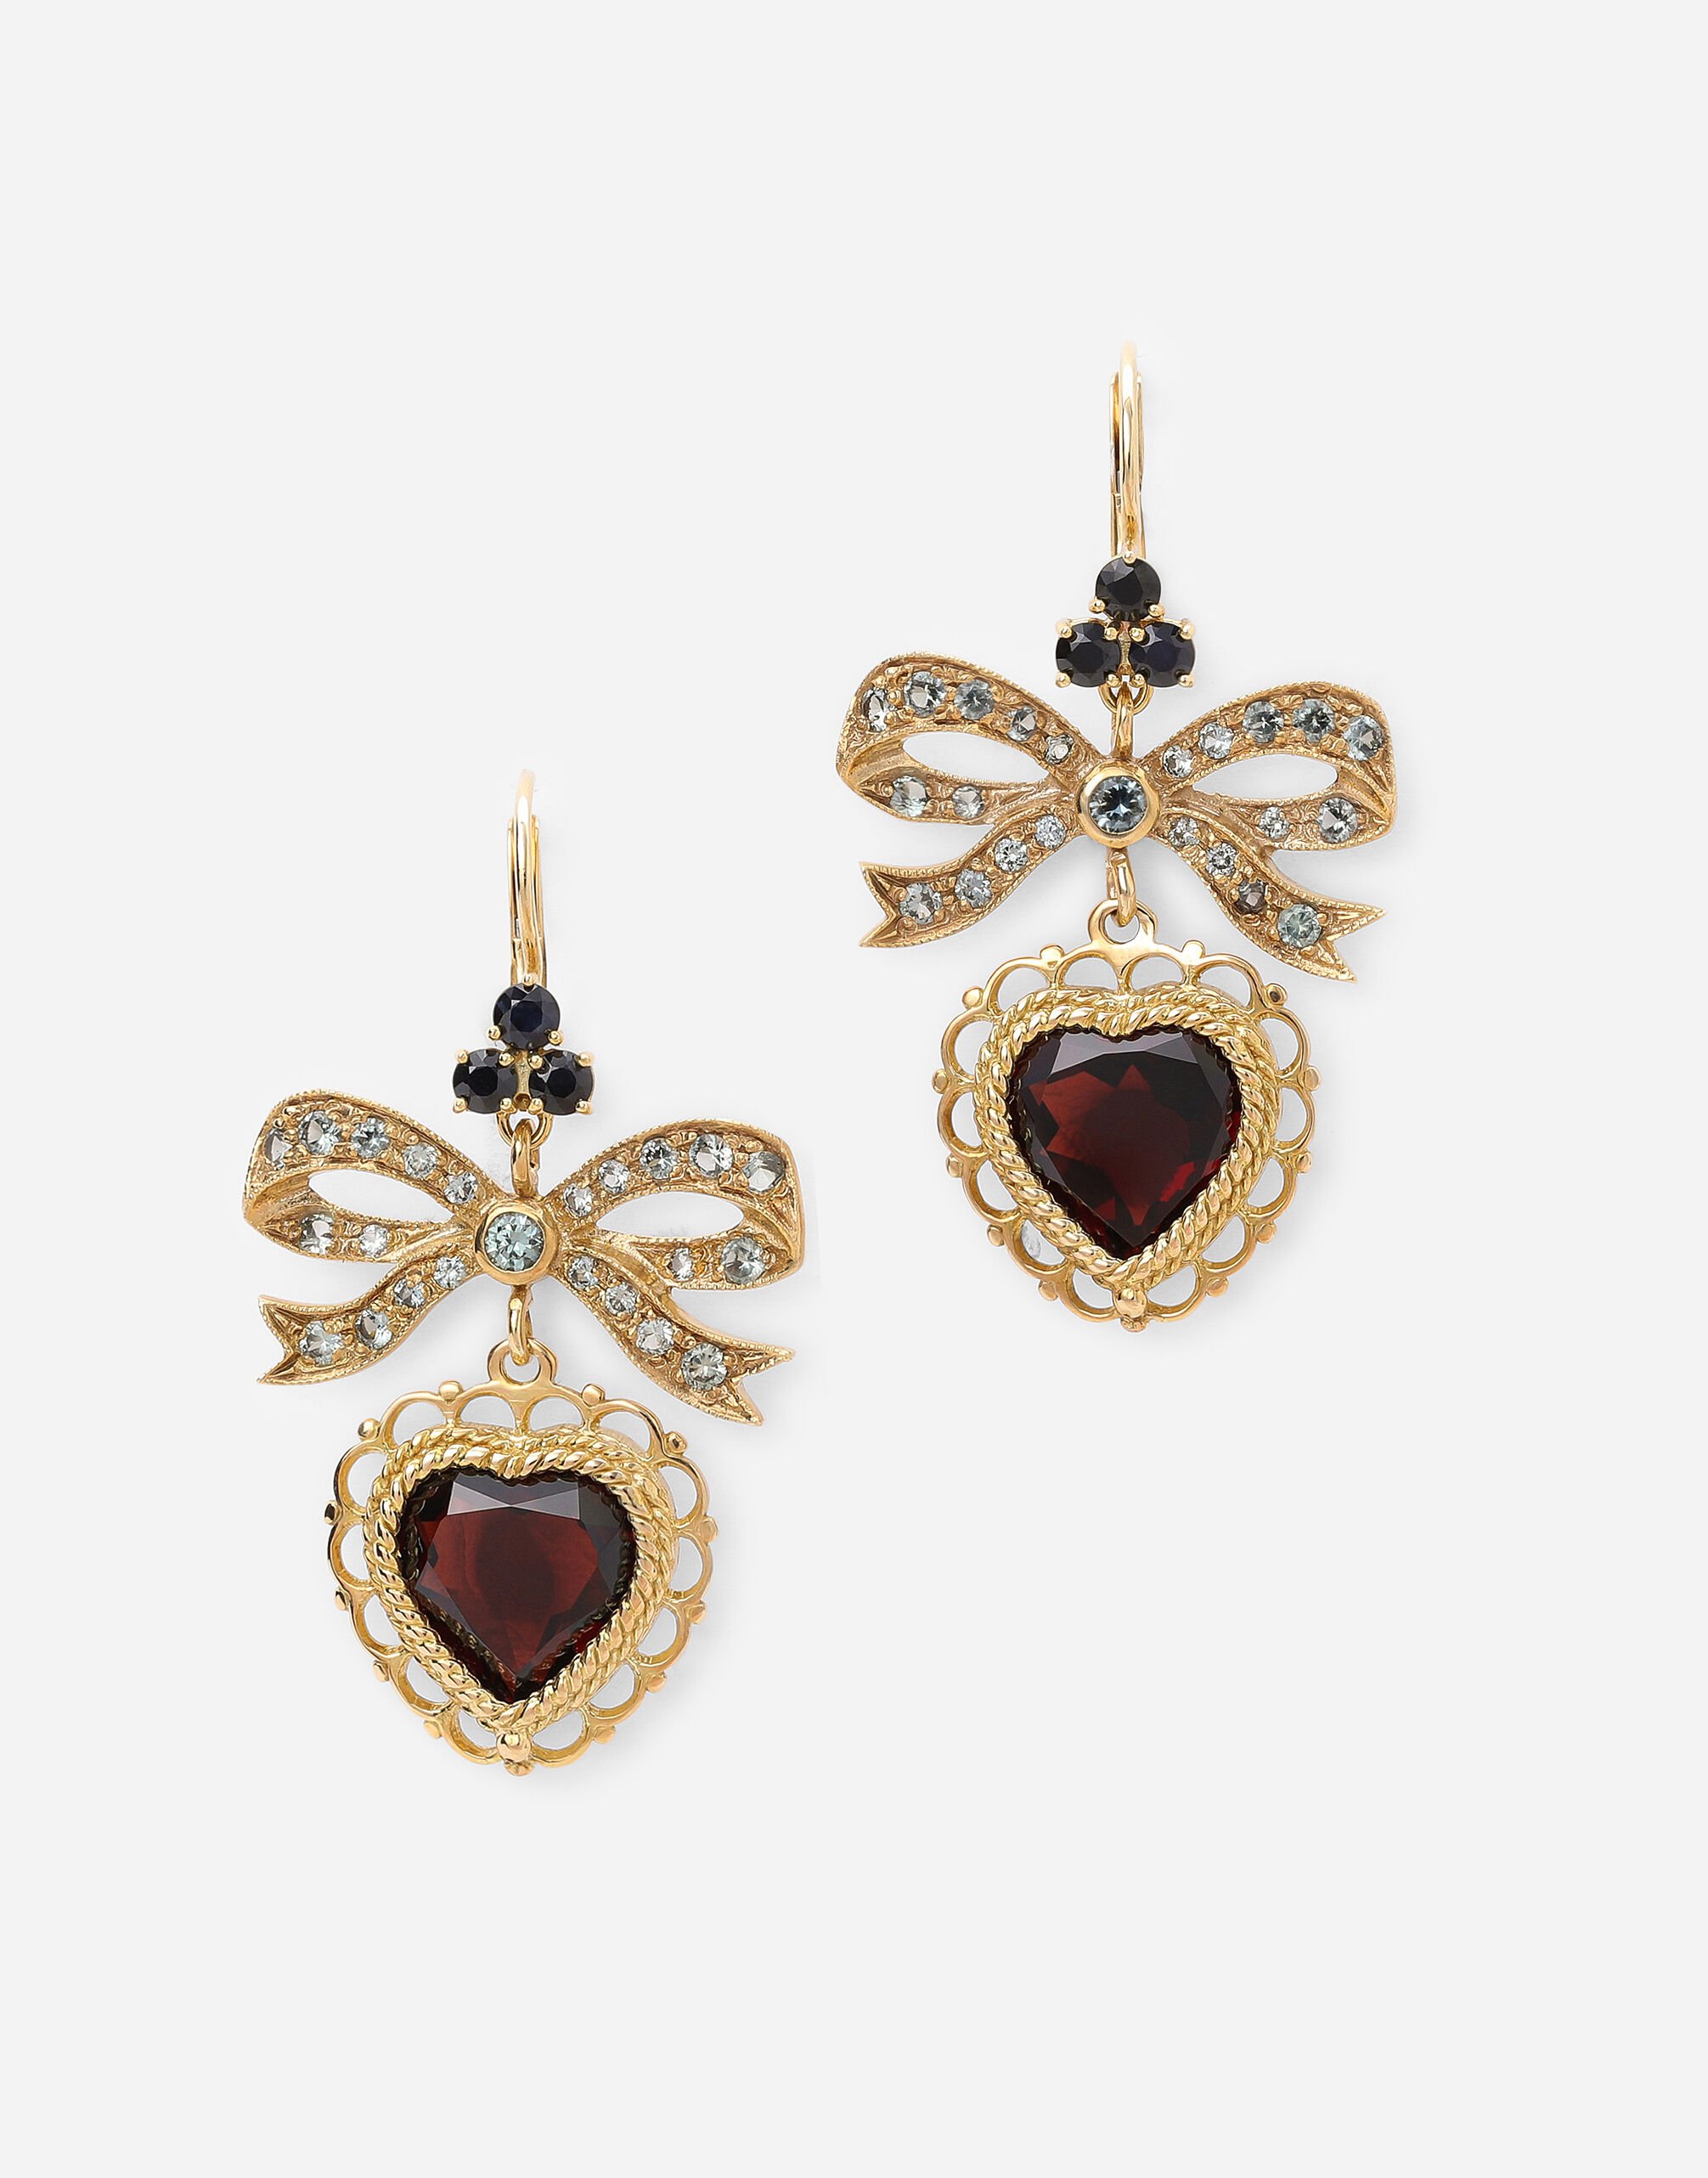 Dolce & Gabbana Heart leverback earrings in yellow 18kt gold with rhodolite garnet heart Yellow Gold WELD2GWDPY1